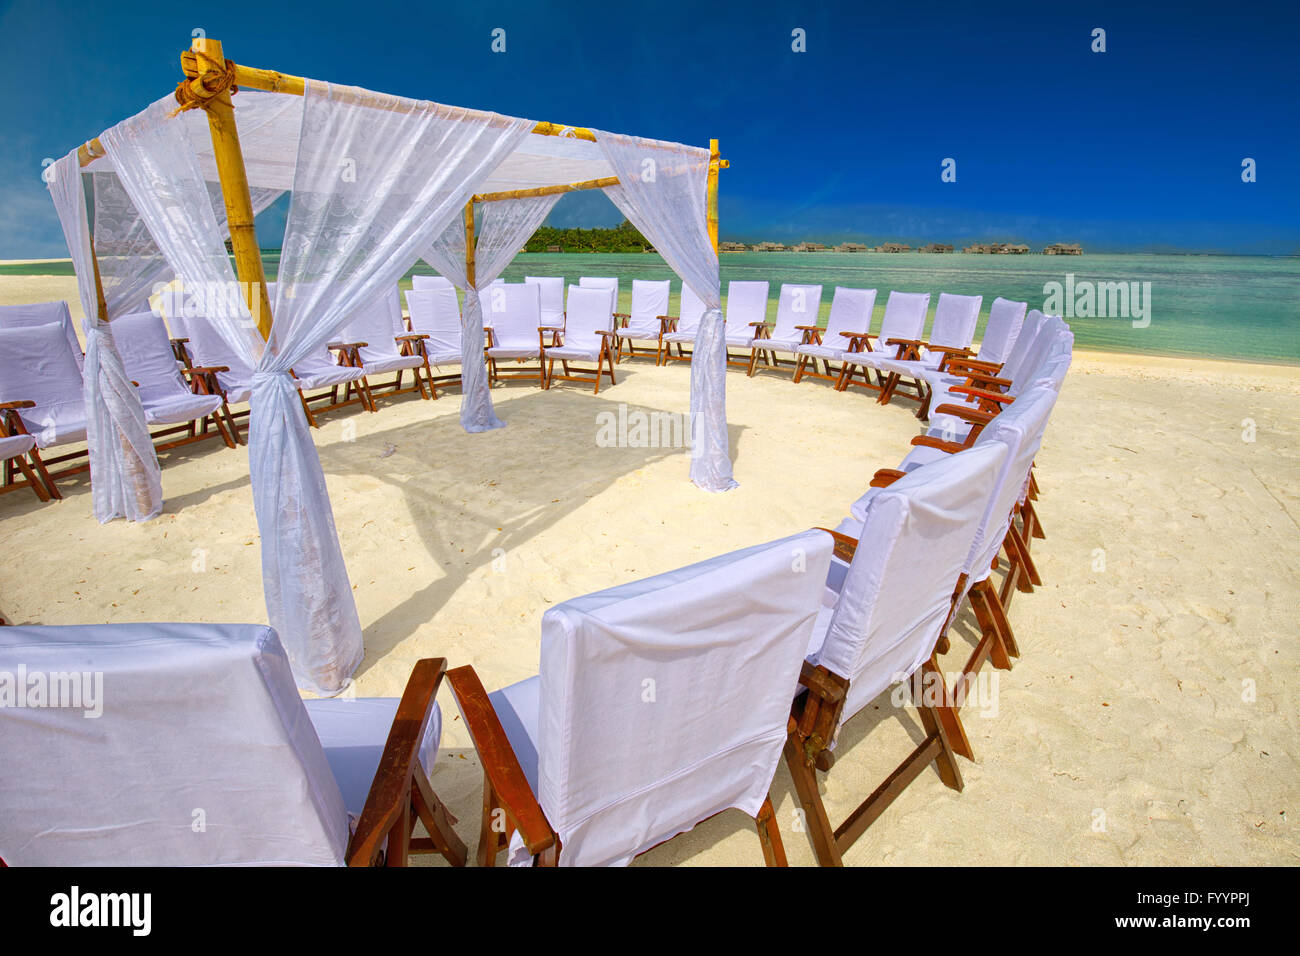 Chaises décorées et arch pour la cérémonie du mariage sur l'île tropicale, plage de sable fin et eau claire tourquise Banque D'Images